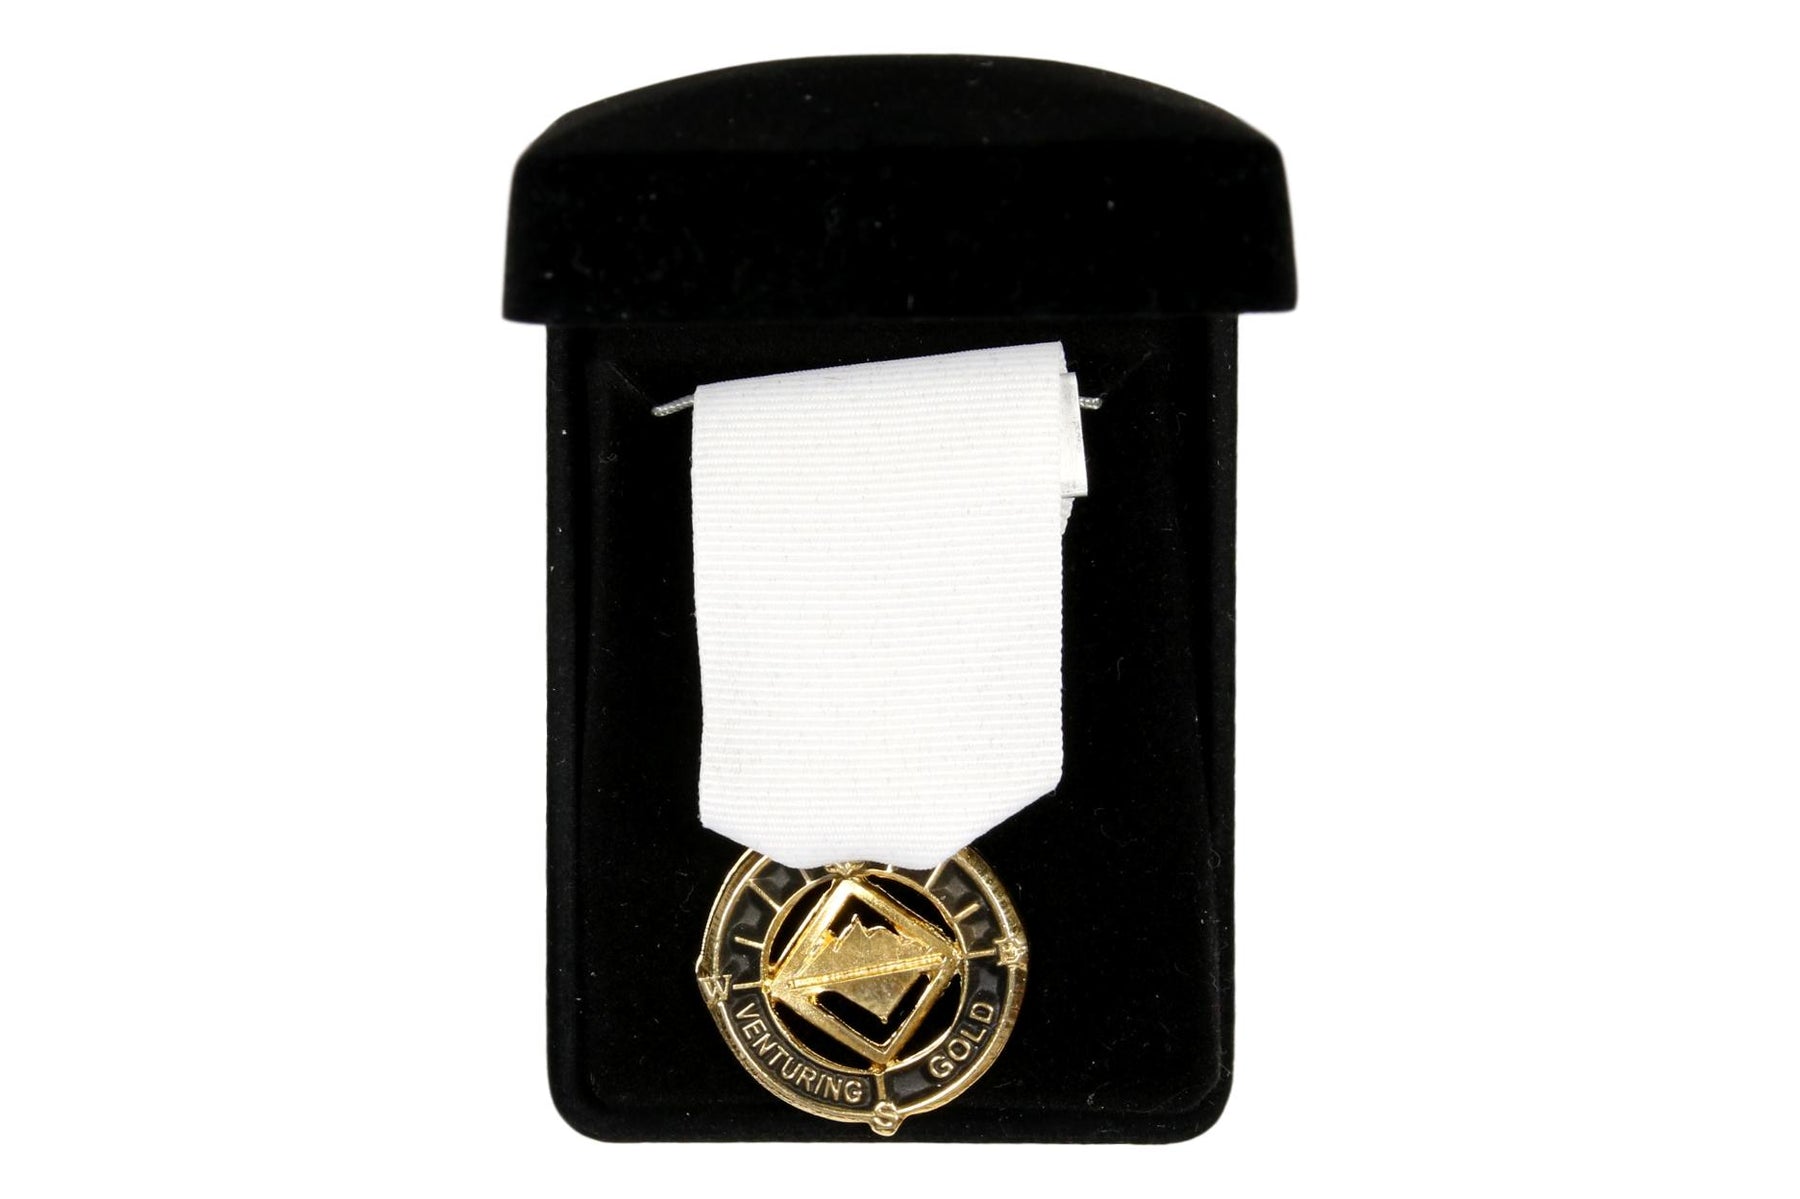 Venturing Gold Award Medal Black Highlights